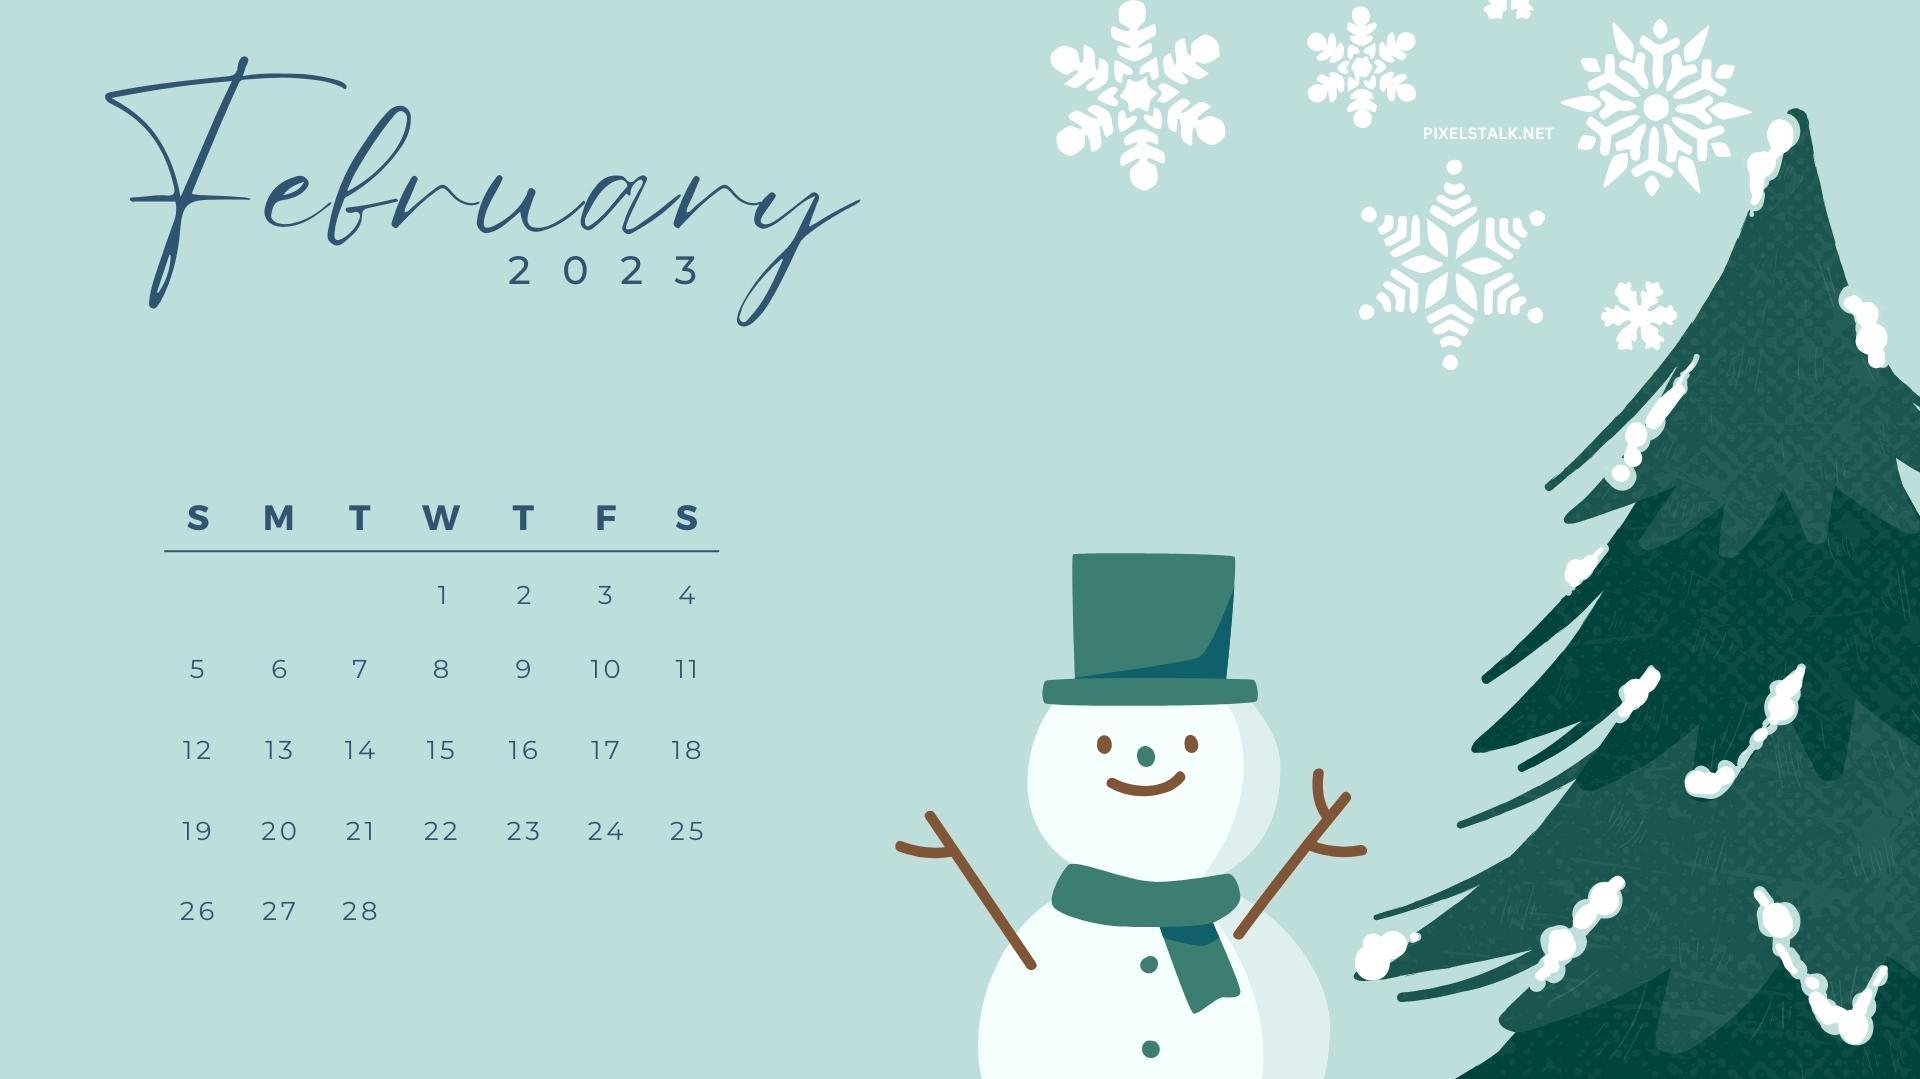 February 2023 Calendar Desktop Wallpapers